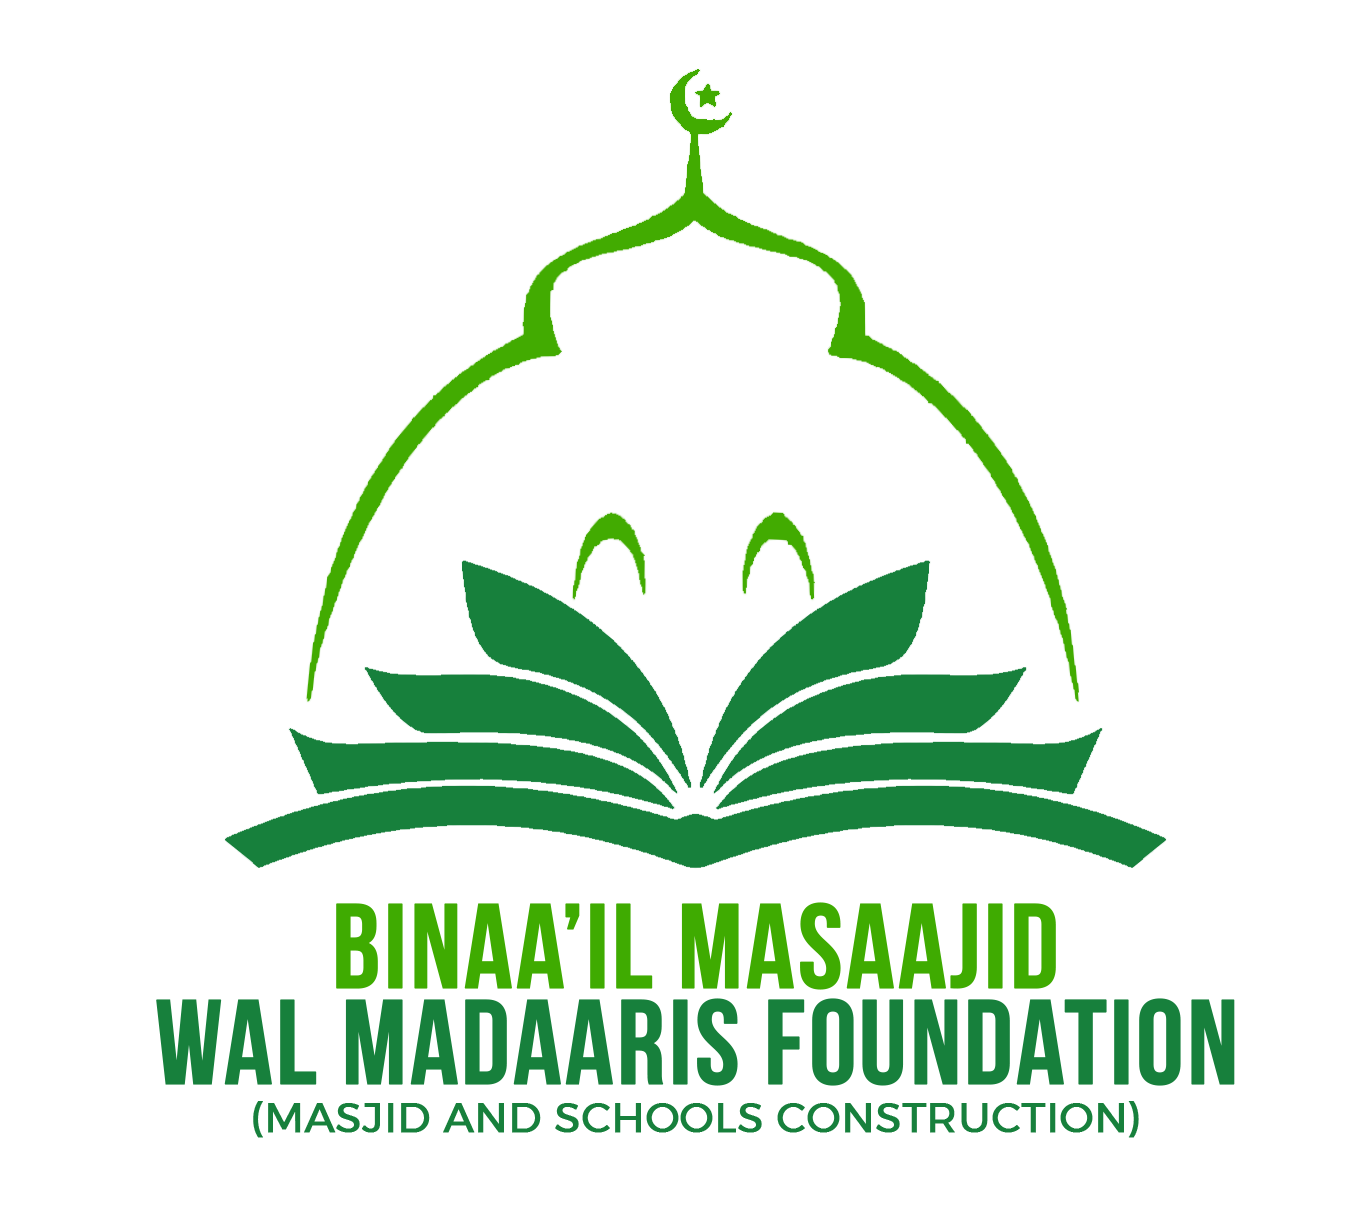 Binaa'il MASAAJID WAL MADAARIS FOUDNDATION LOGO